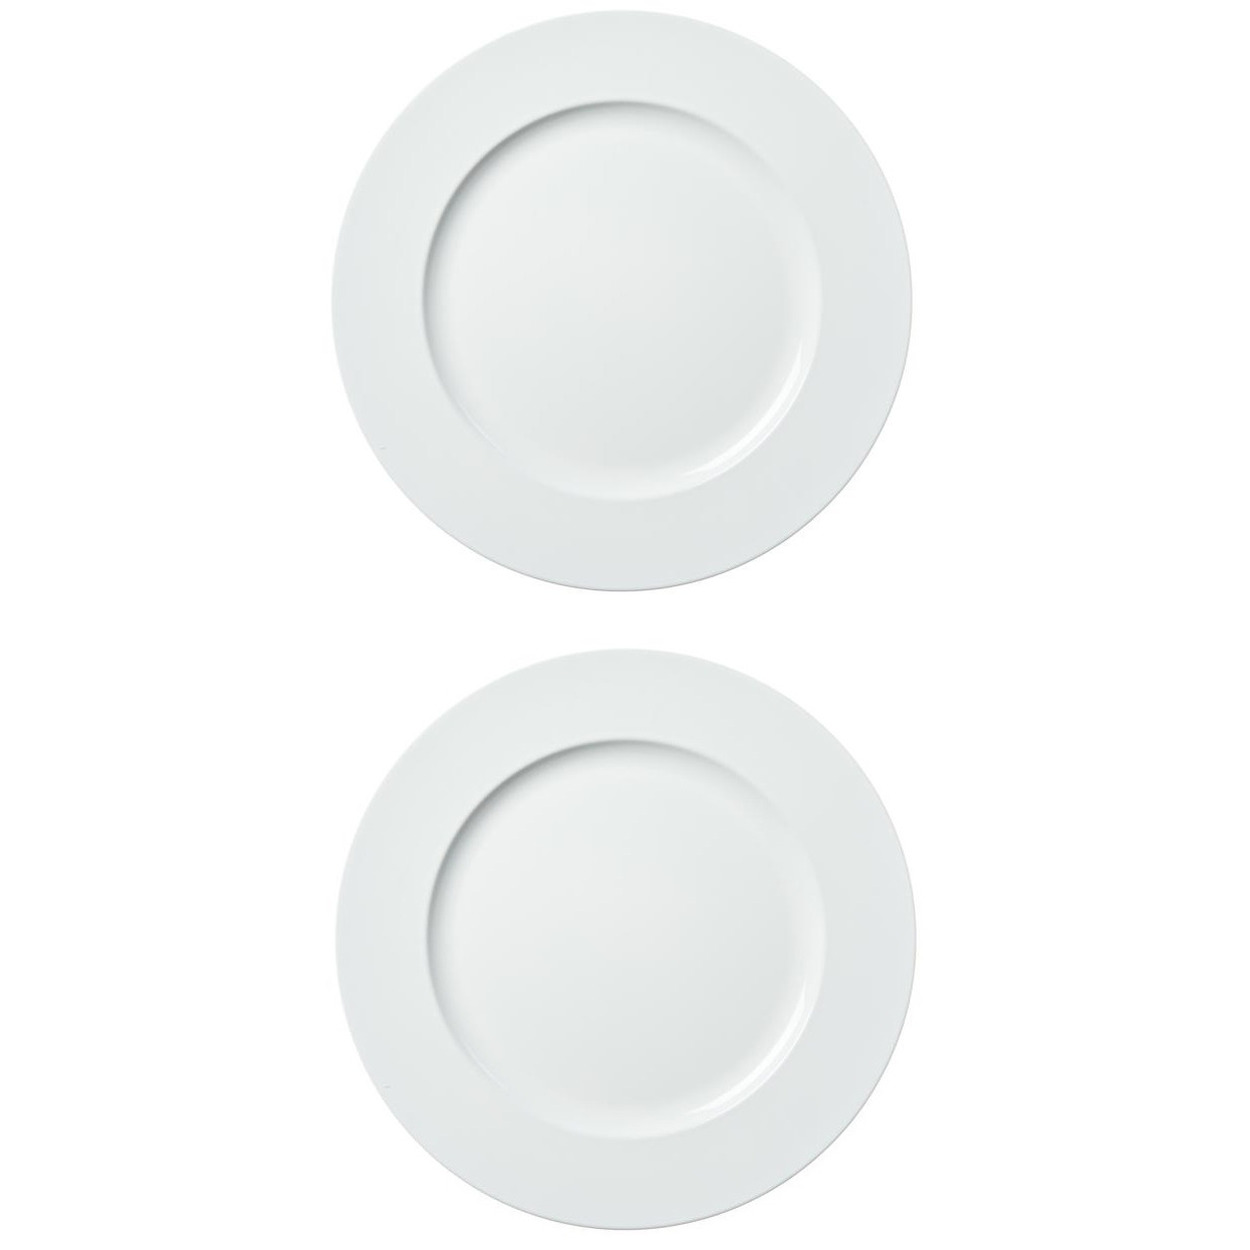 10x stuks diner borden-onderborden wit 33 cm